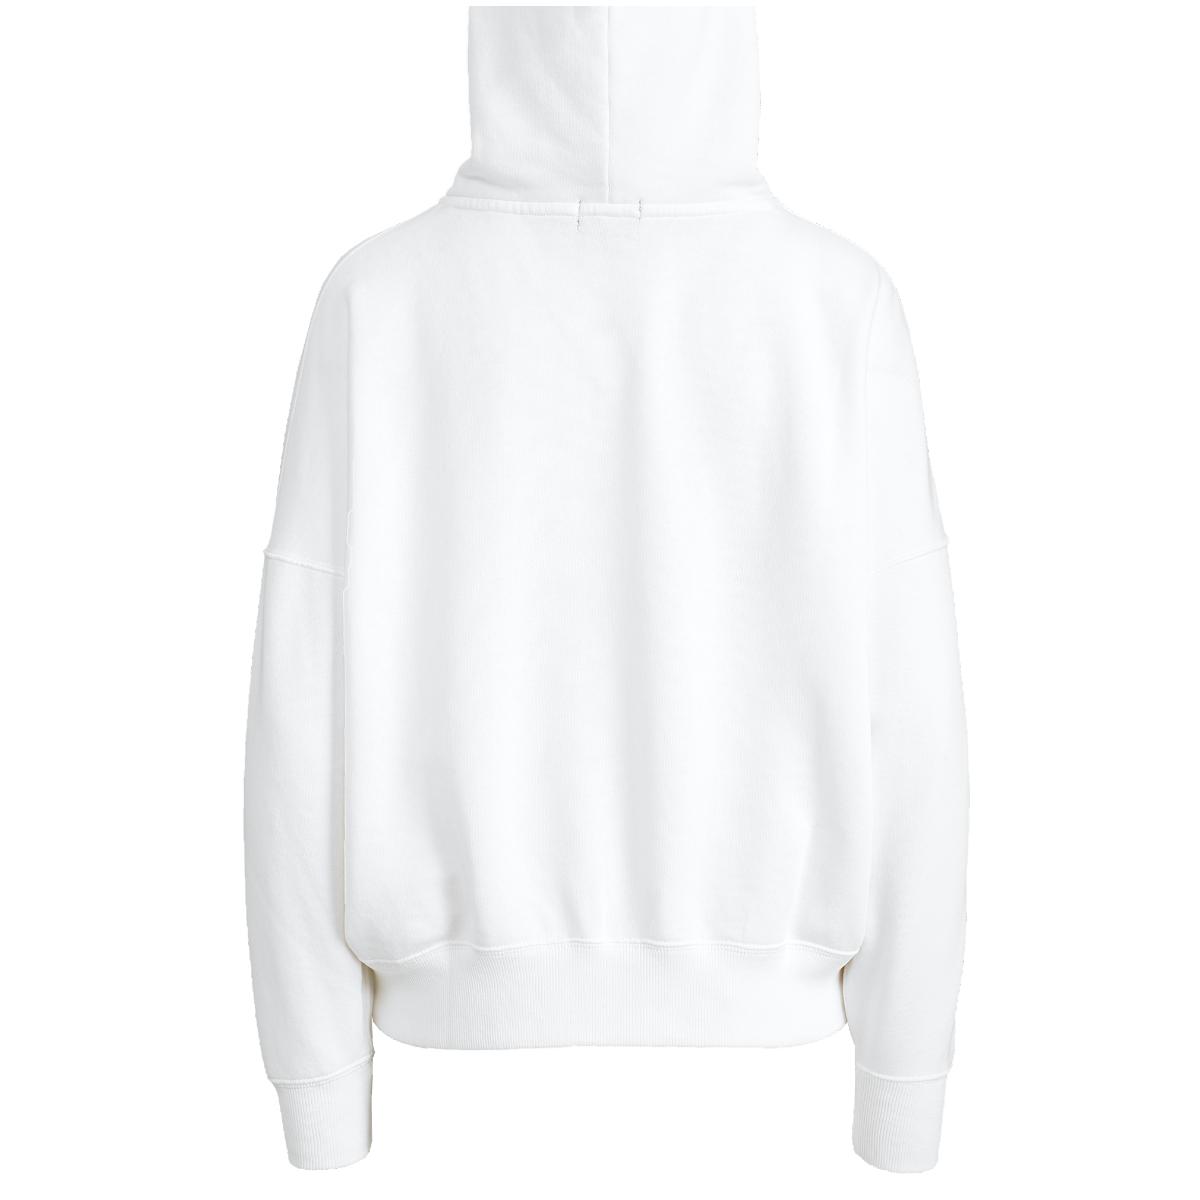 Monogram Fleece Jacket Full Zip up Hoodie for Women Gift 